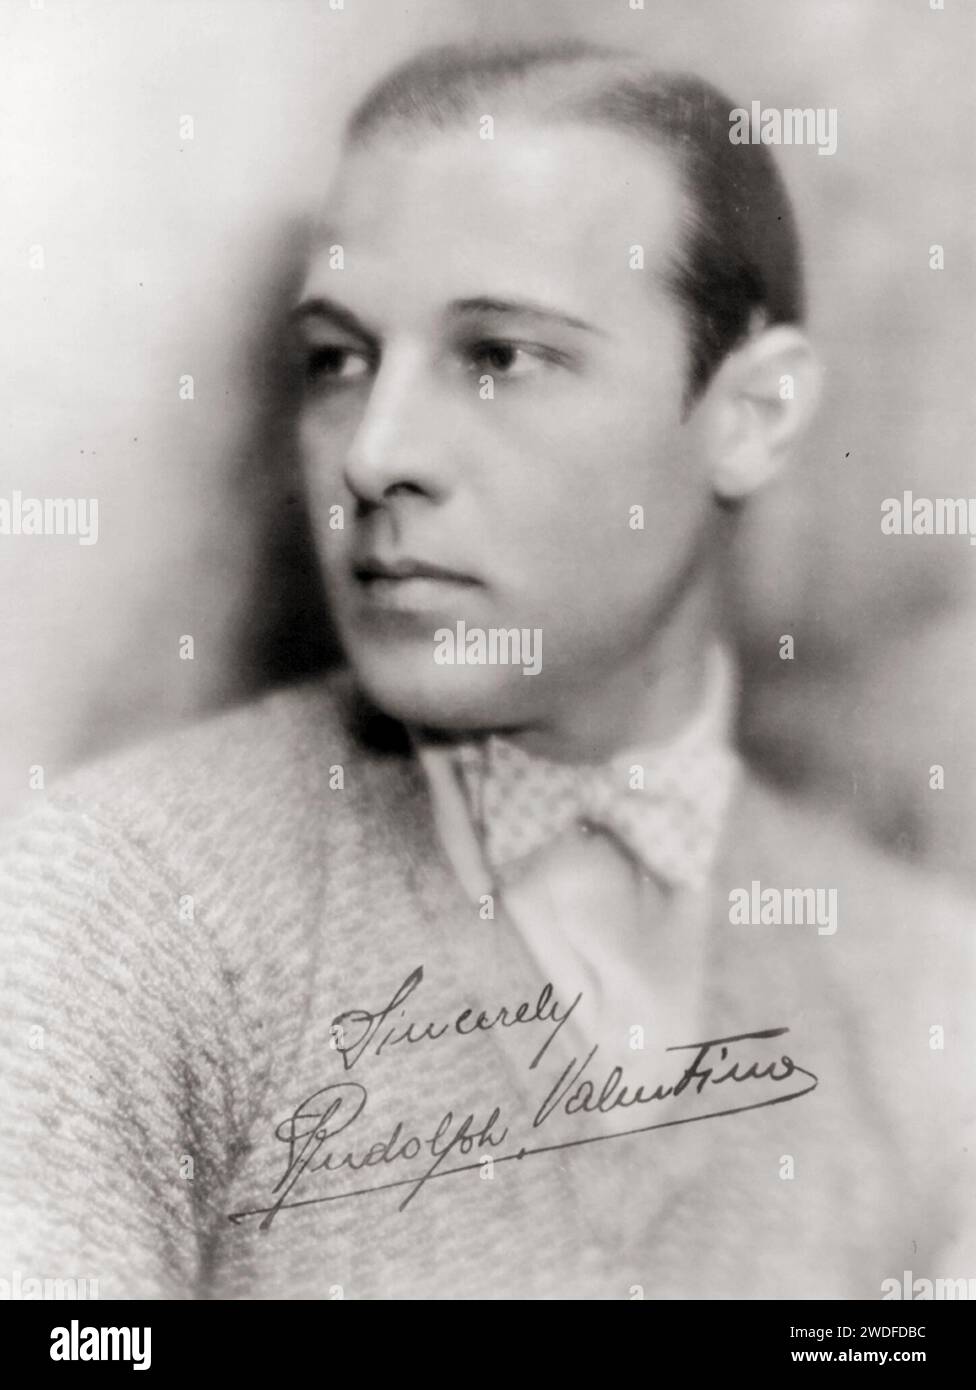 Star de cinéma Rudolph Valentino, portrait de tête et d'épaules, années 1920 - photo de fan avec autographe Banque D'Images